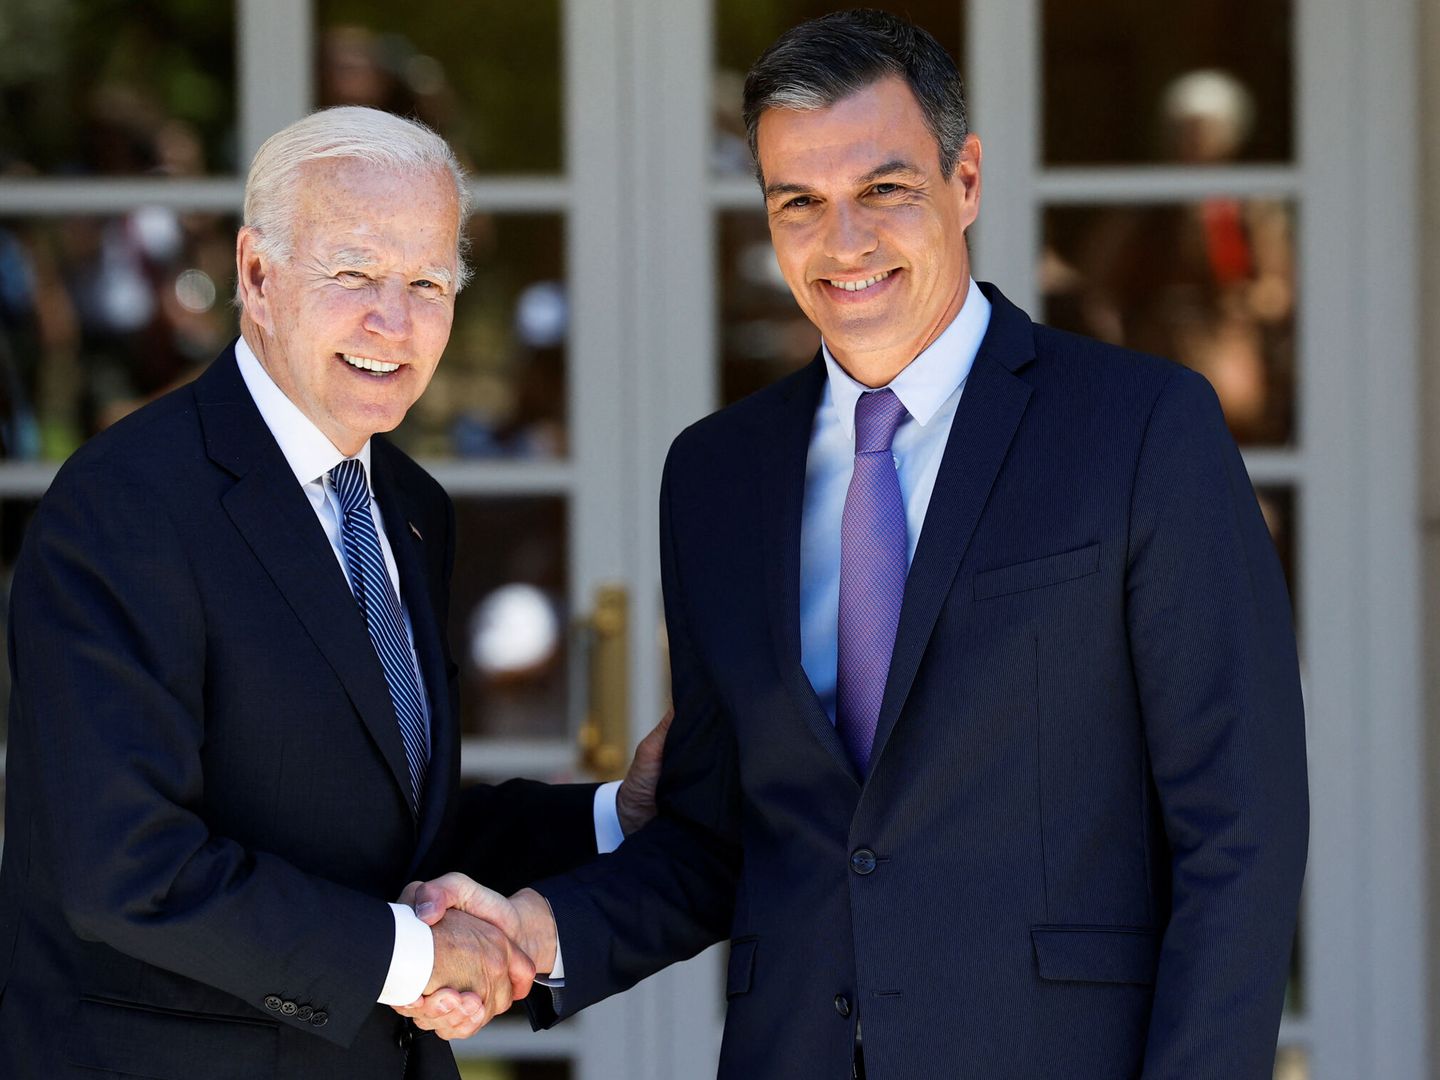 Joe Biden llega a la Moncloa y es recibido por Sánchez. (Reuters/Juan Medina)